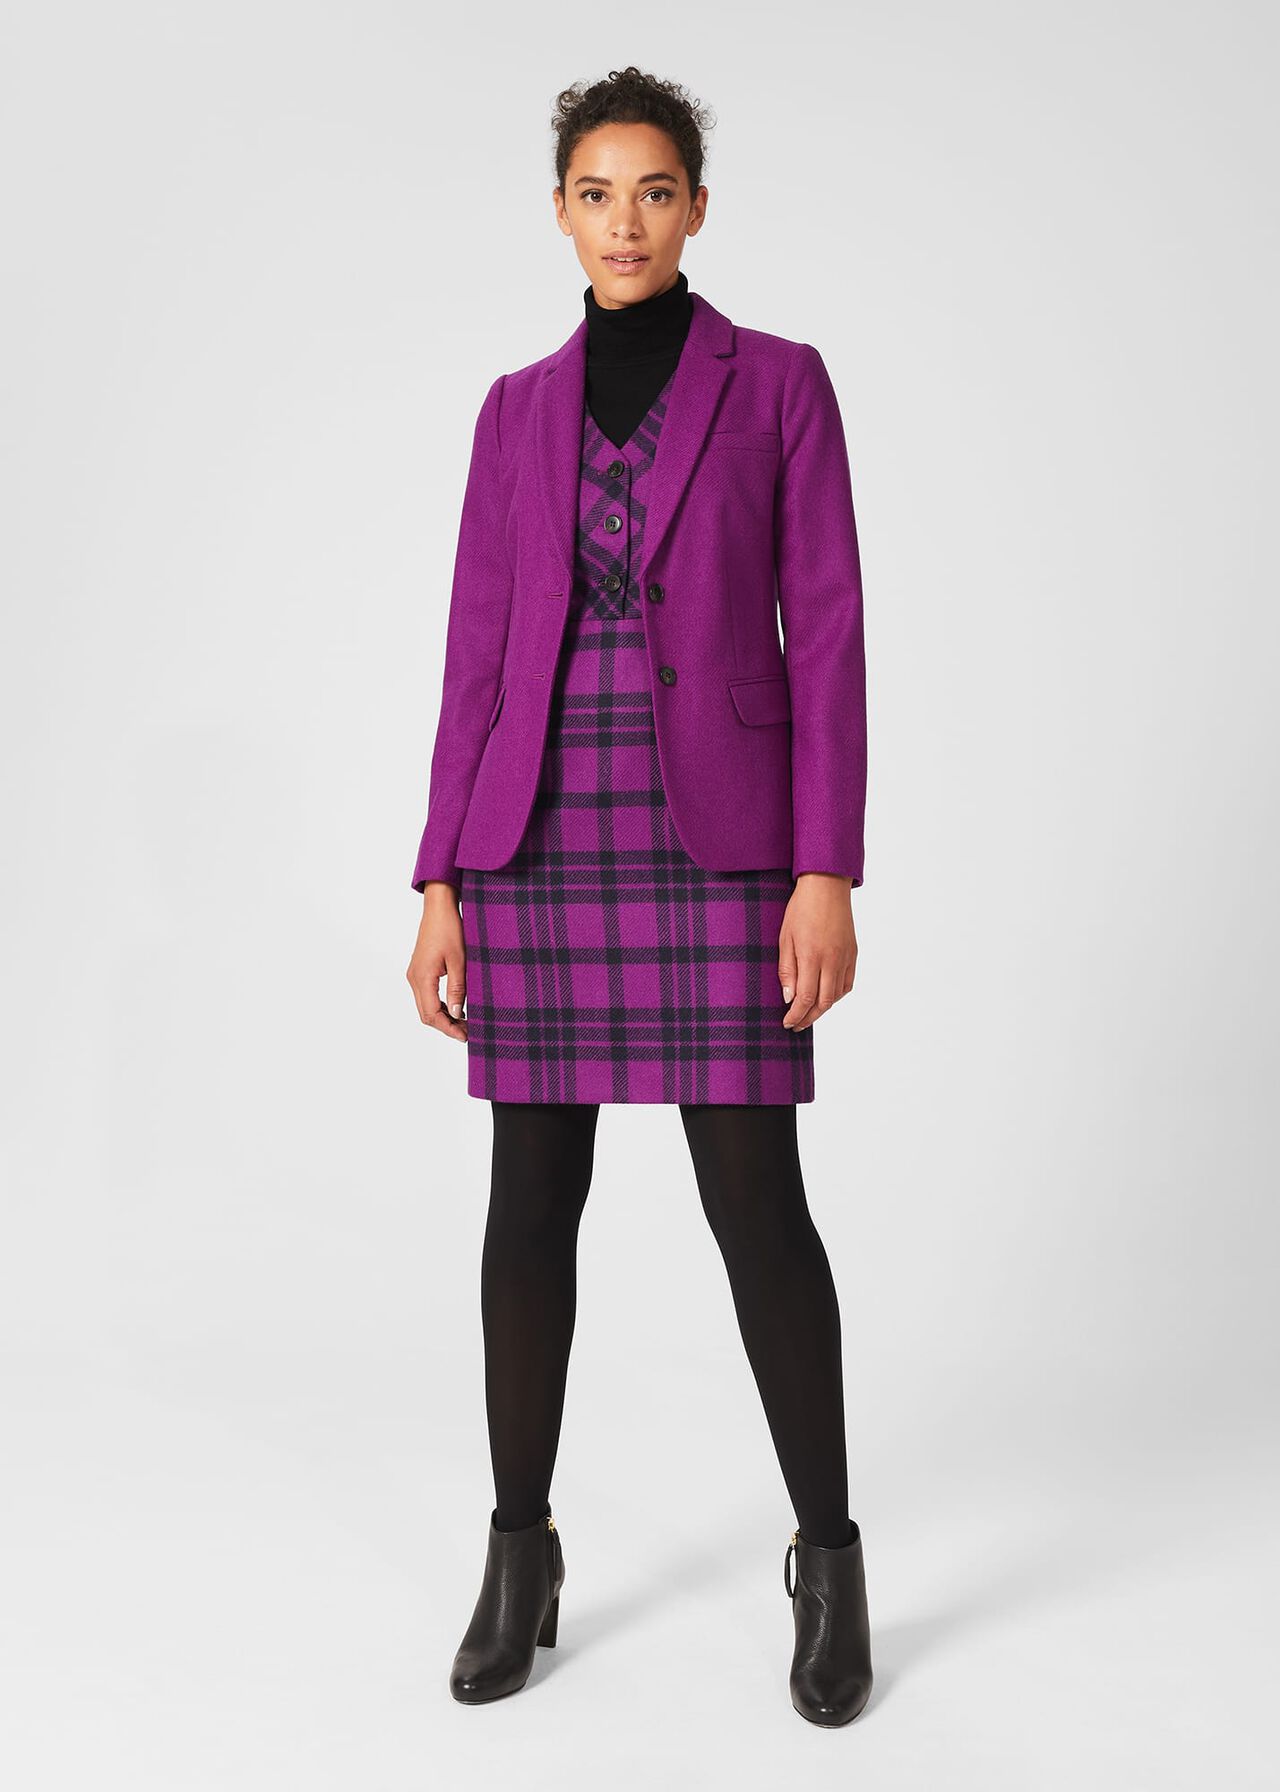 Mary Wool Dress, Purple Multi, hi-res